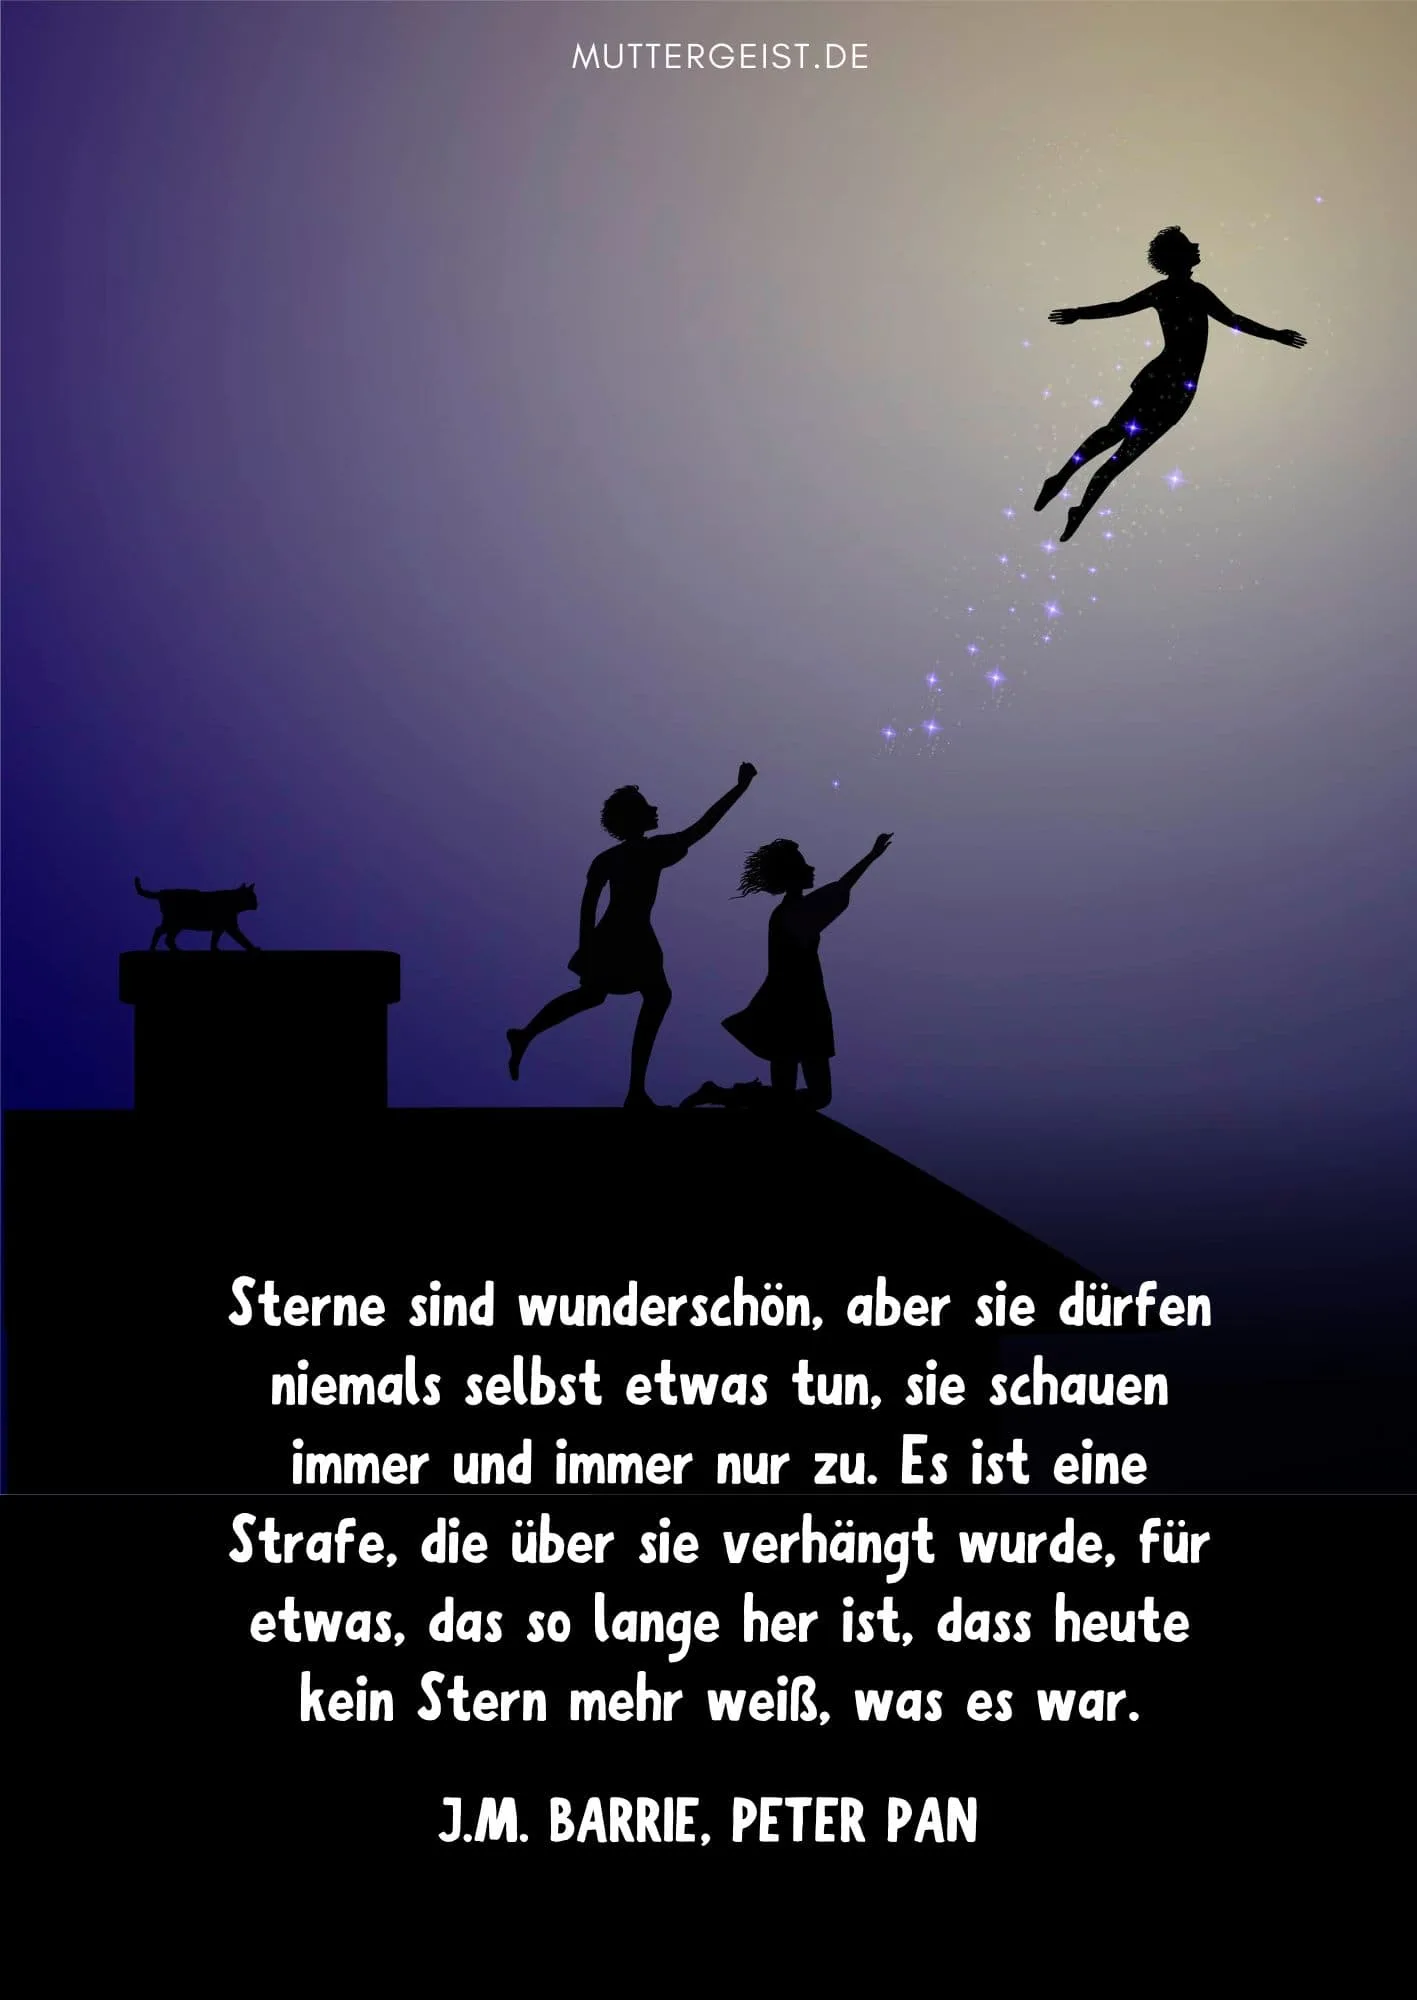 Zitat über die Sterne aus Peter Pan